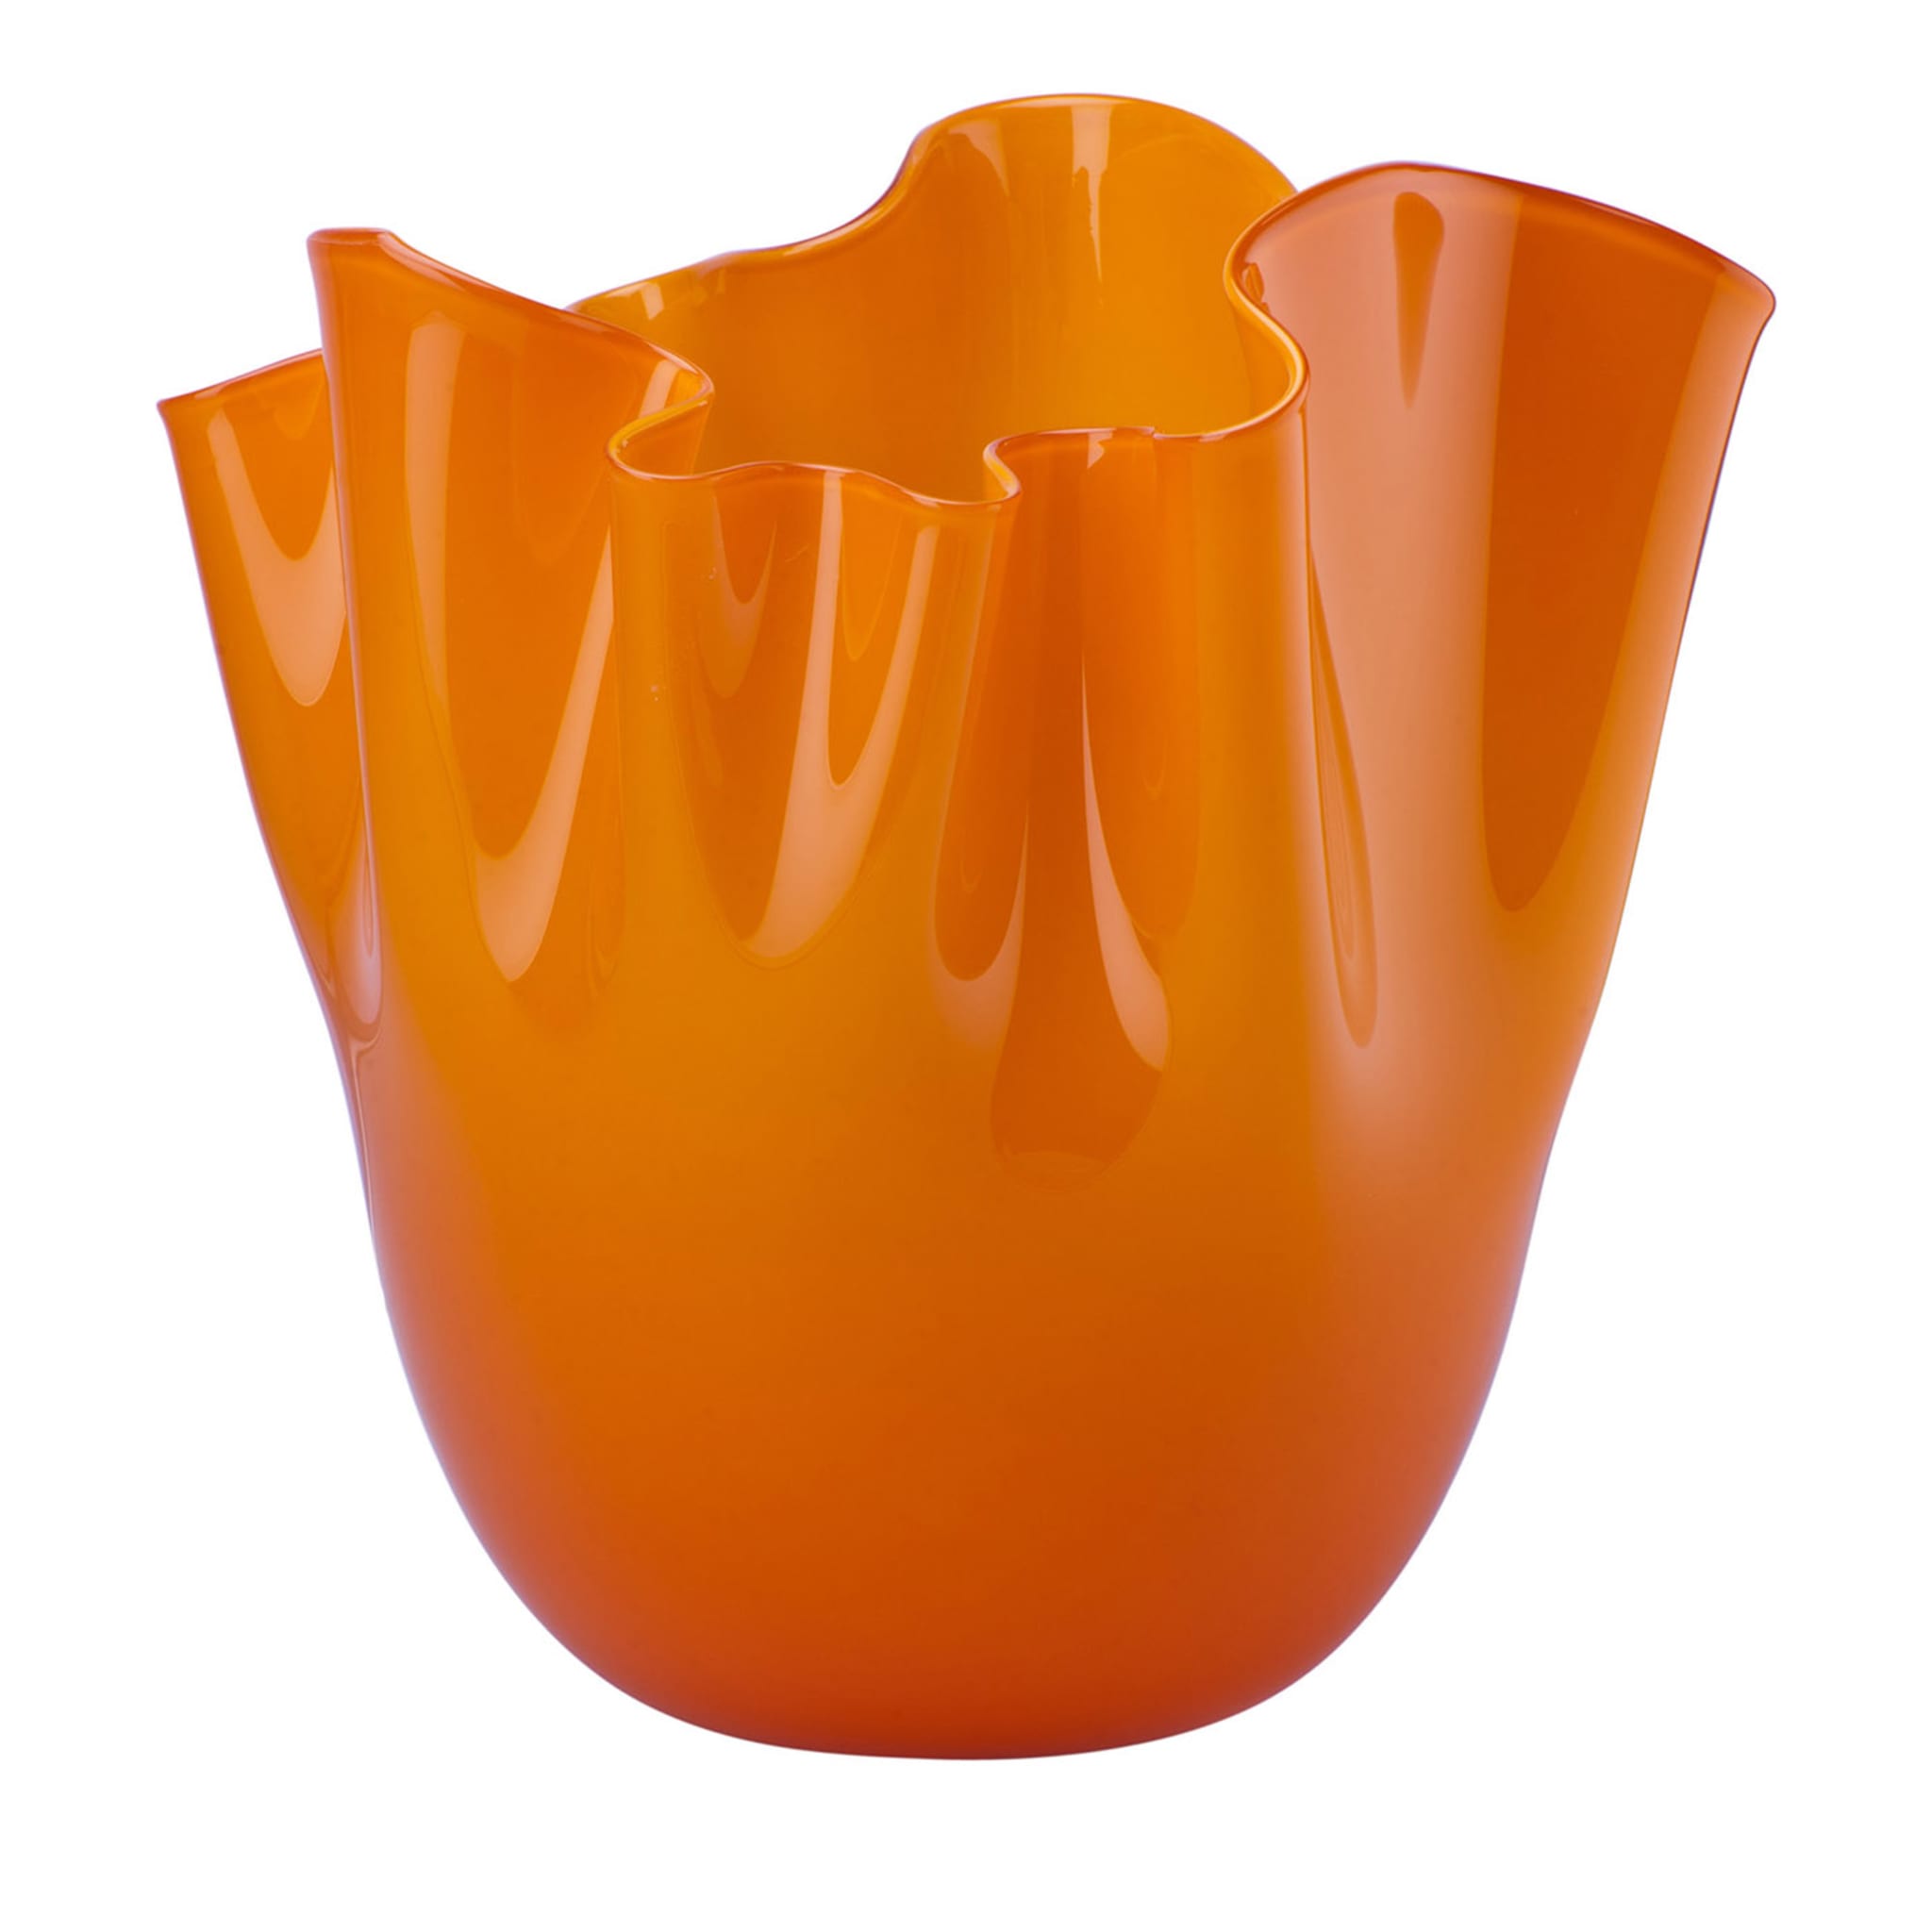 Fazzoletto Orange Vase by Paolo Venini and Fulvio Bianconi - Main view